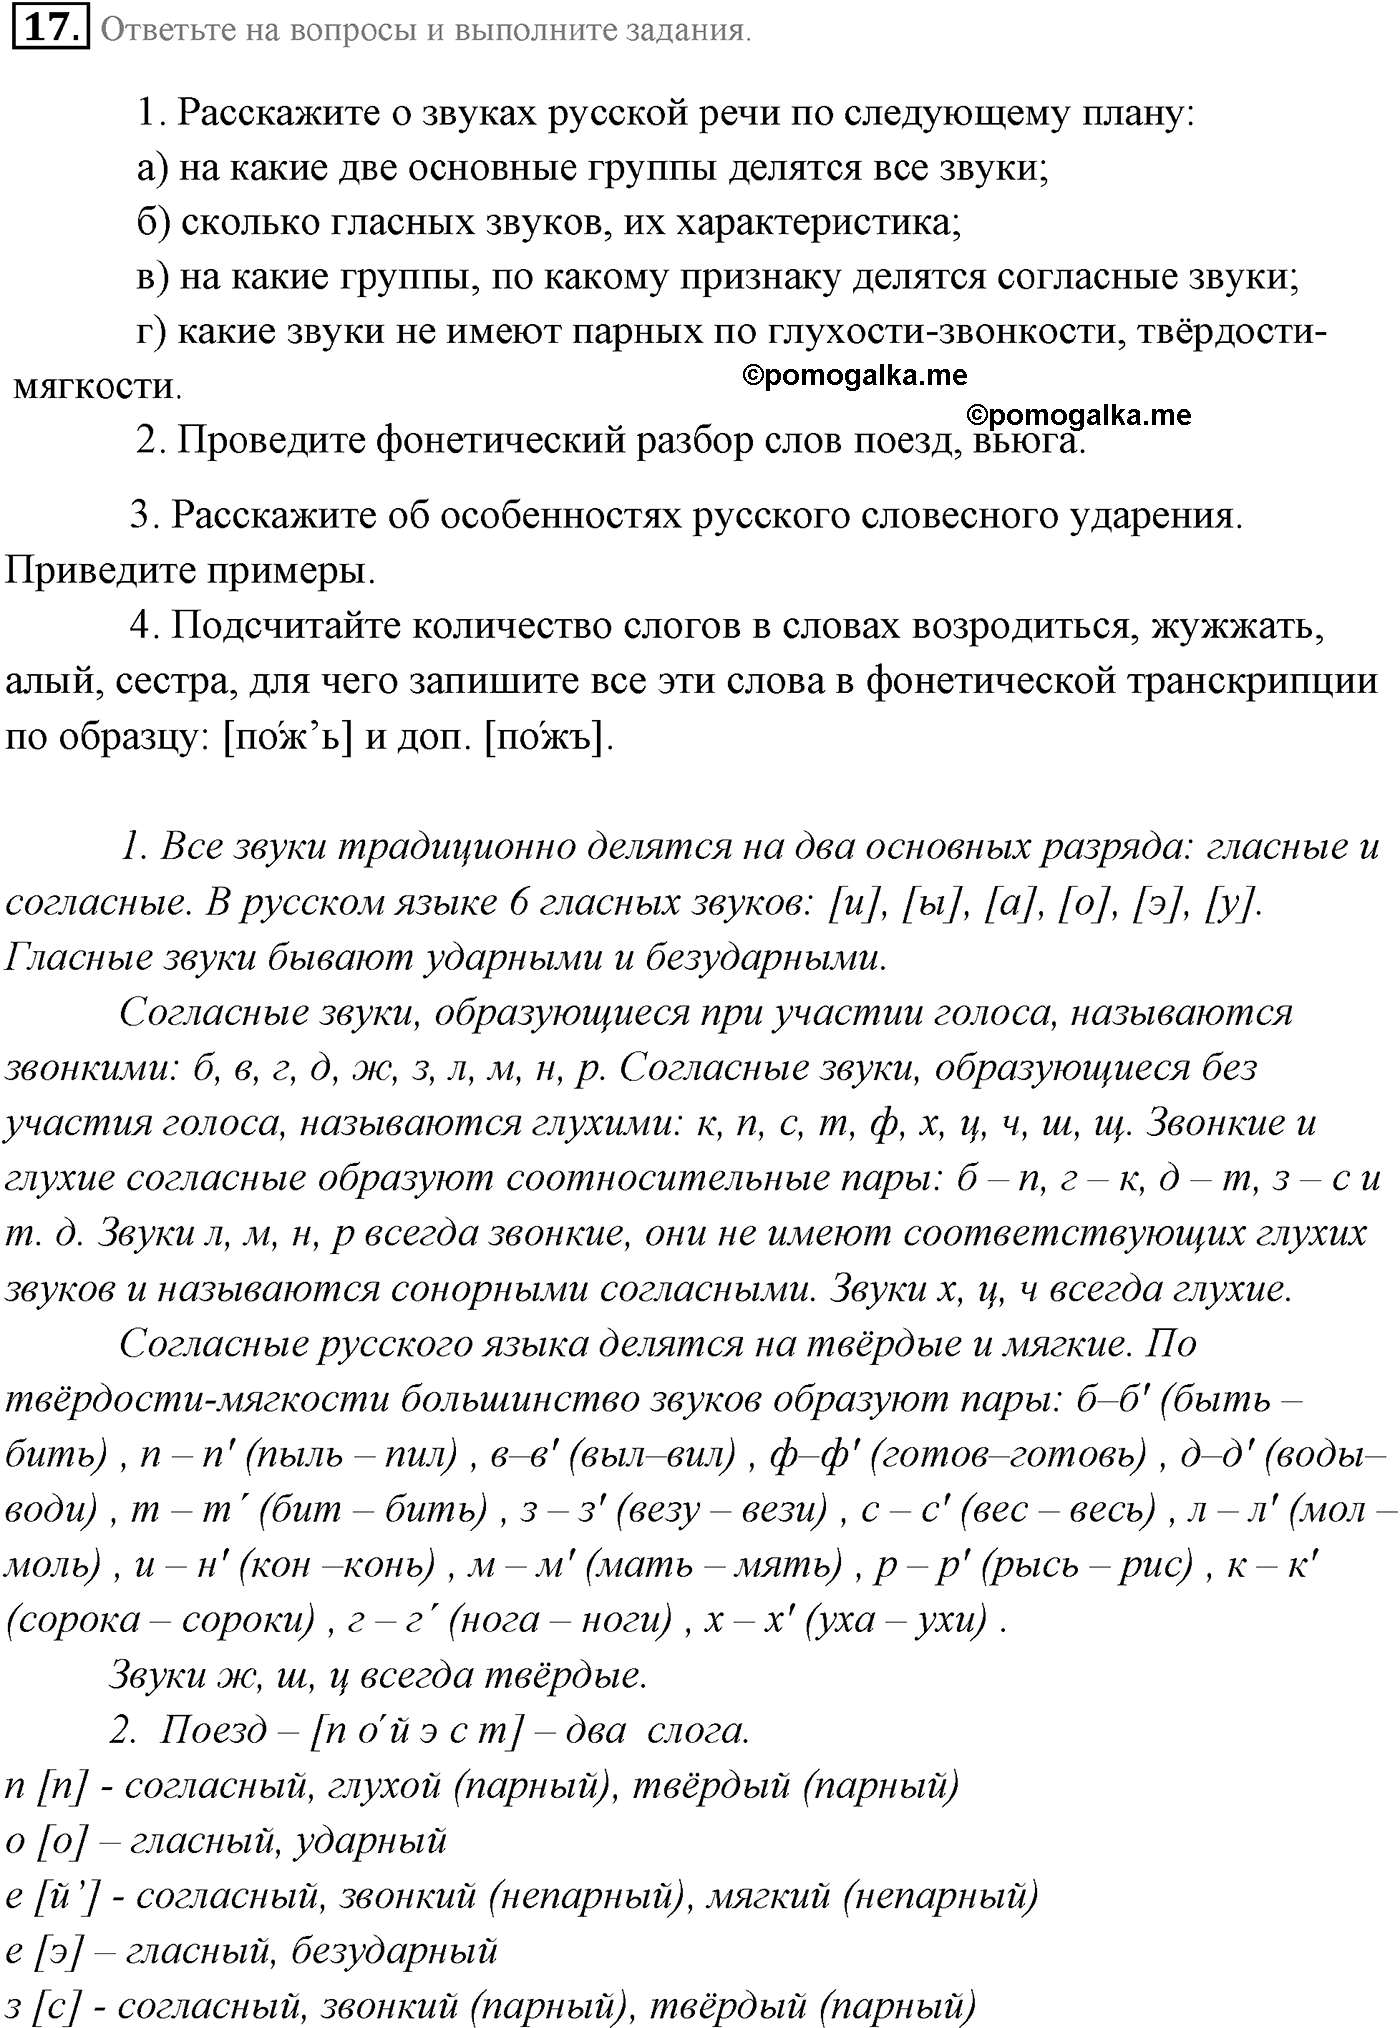 страница 13 номер 17 русский язык 9 класс Разумовская 2011 год